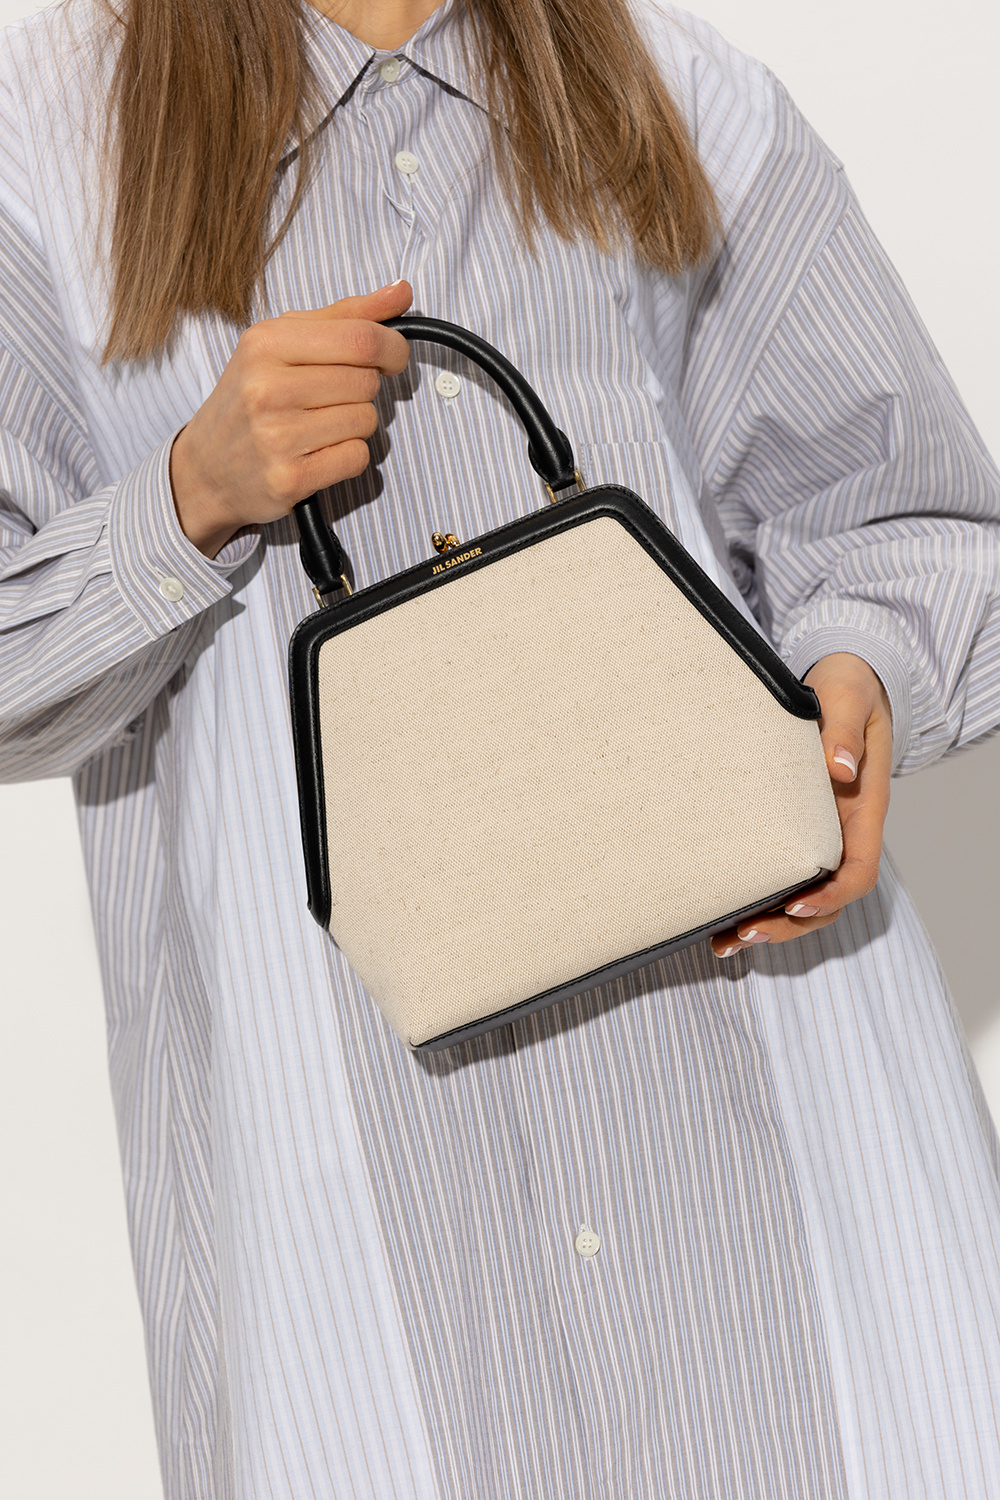 JIL SANDER 'Goji Square Small' handbag | StclaircomoShops